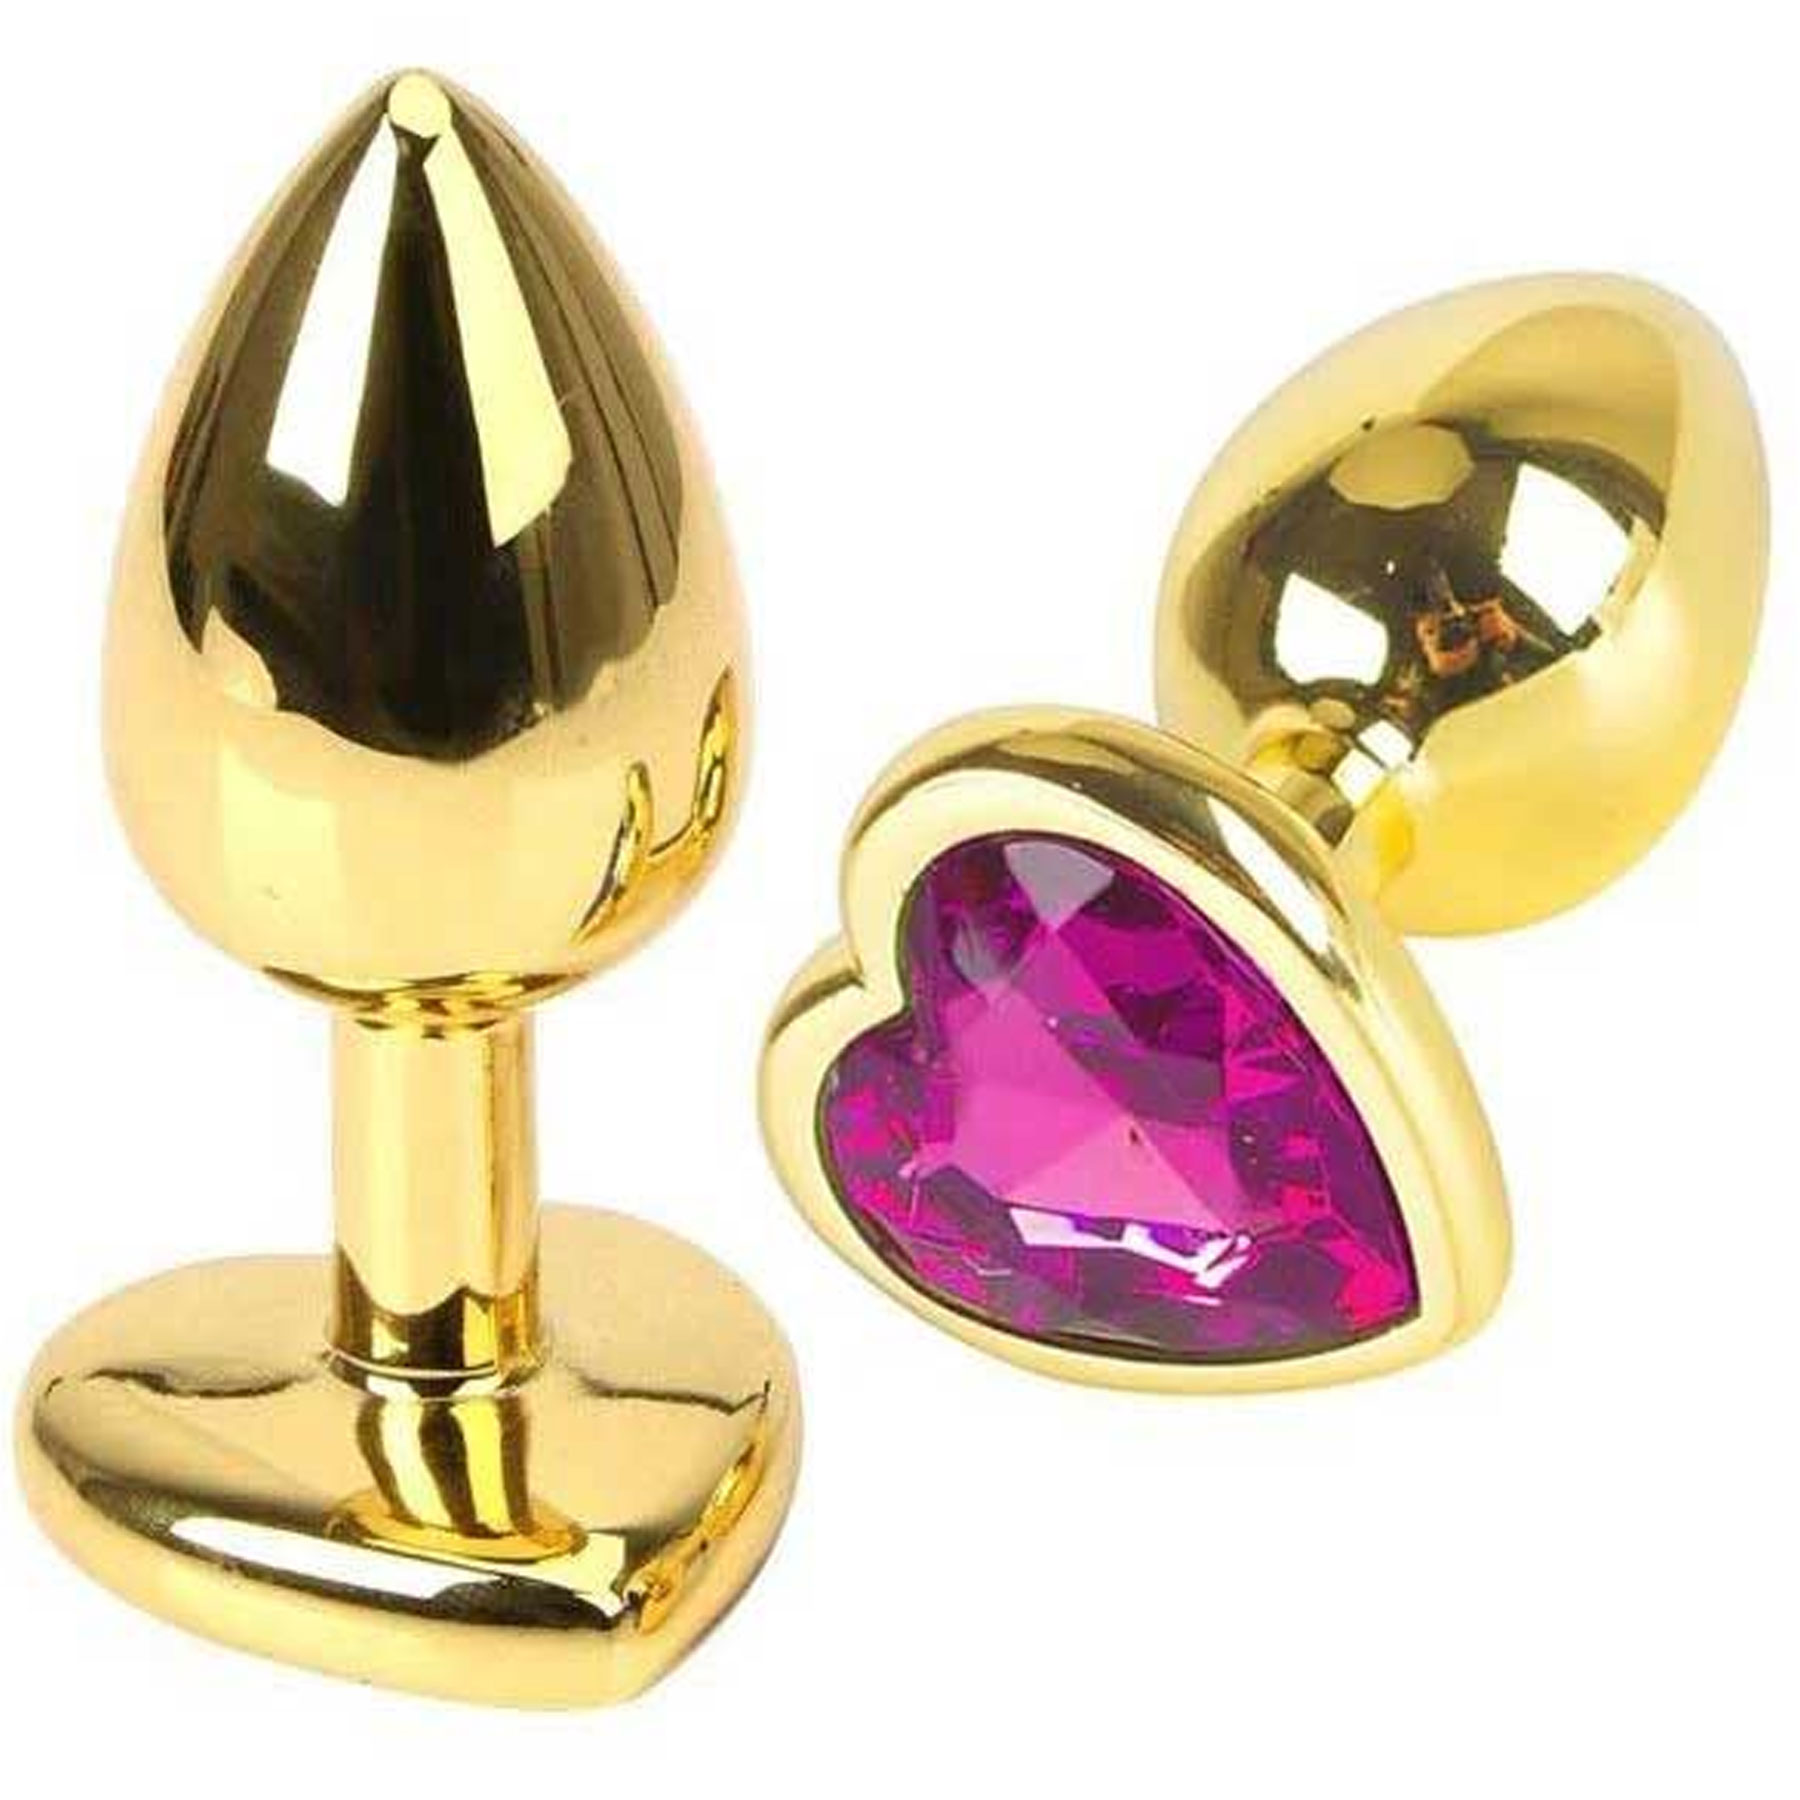 Kalp Mücevherli Altın Rengi Metal Anal Plug - Orta Boy C-401010